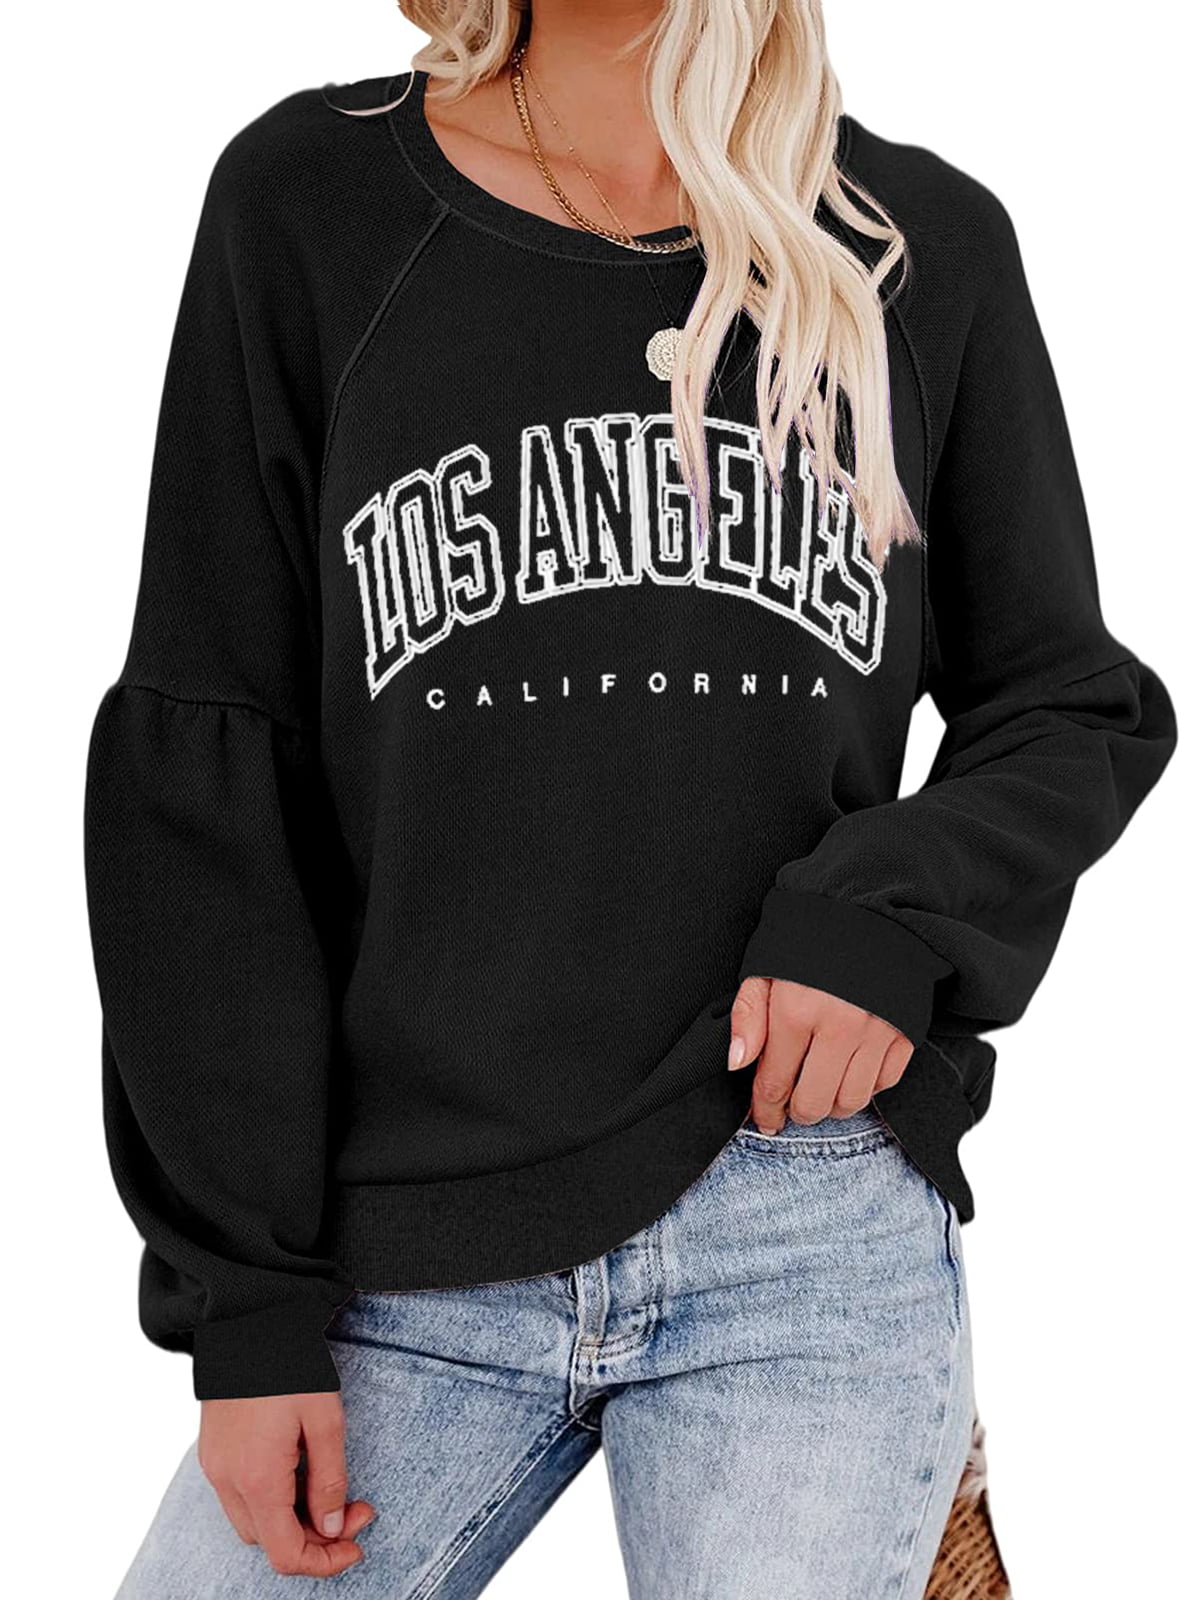 Pullovers Sweatshirt Long Printed California Sweatshirt Drop Angeles Plnotme Shoulder Round Los Loose Neck Womens Sleeve Solid Hoodies Casual Letter